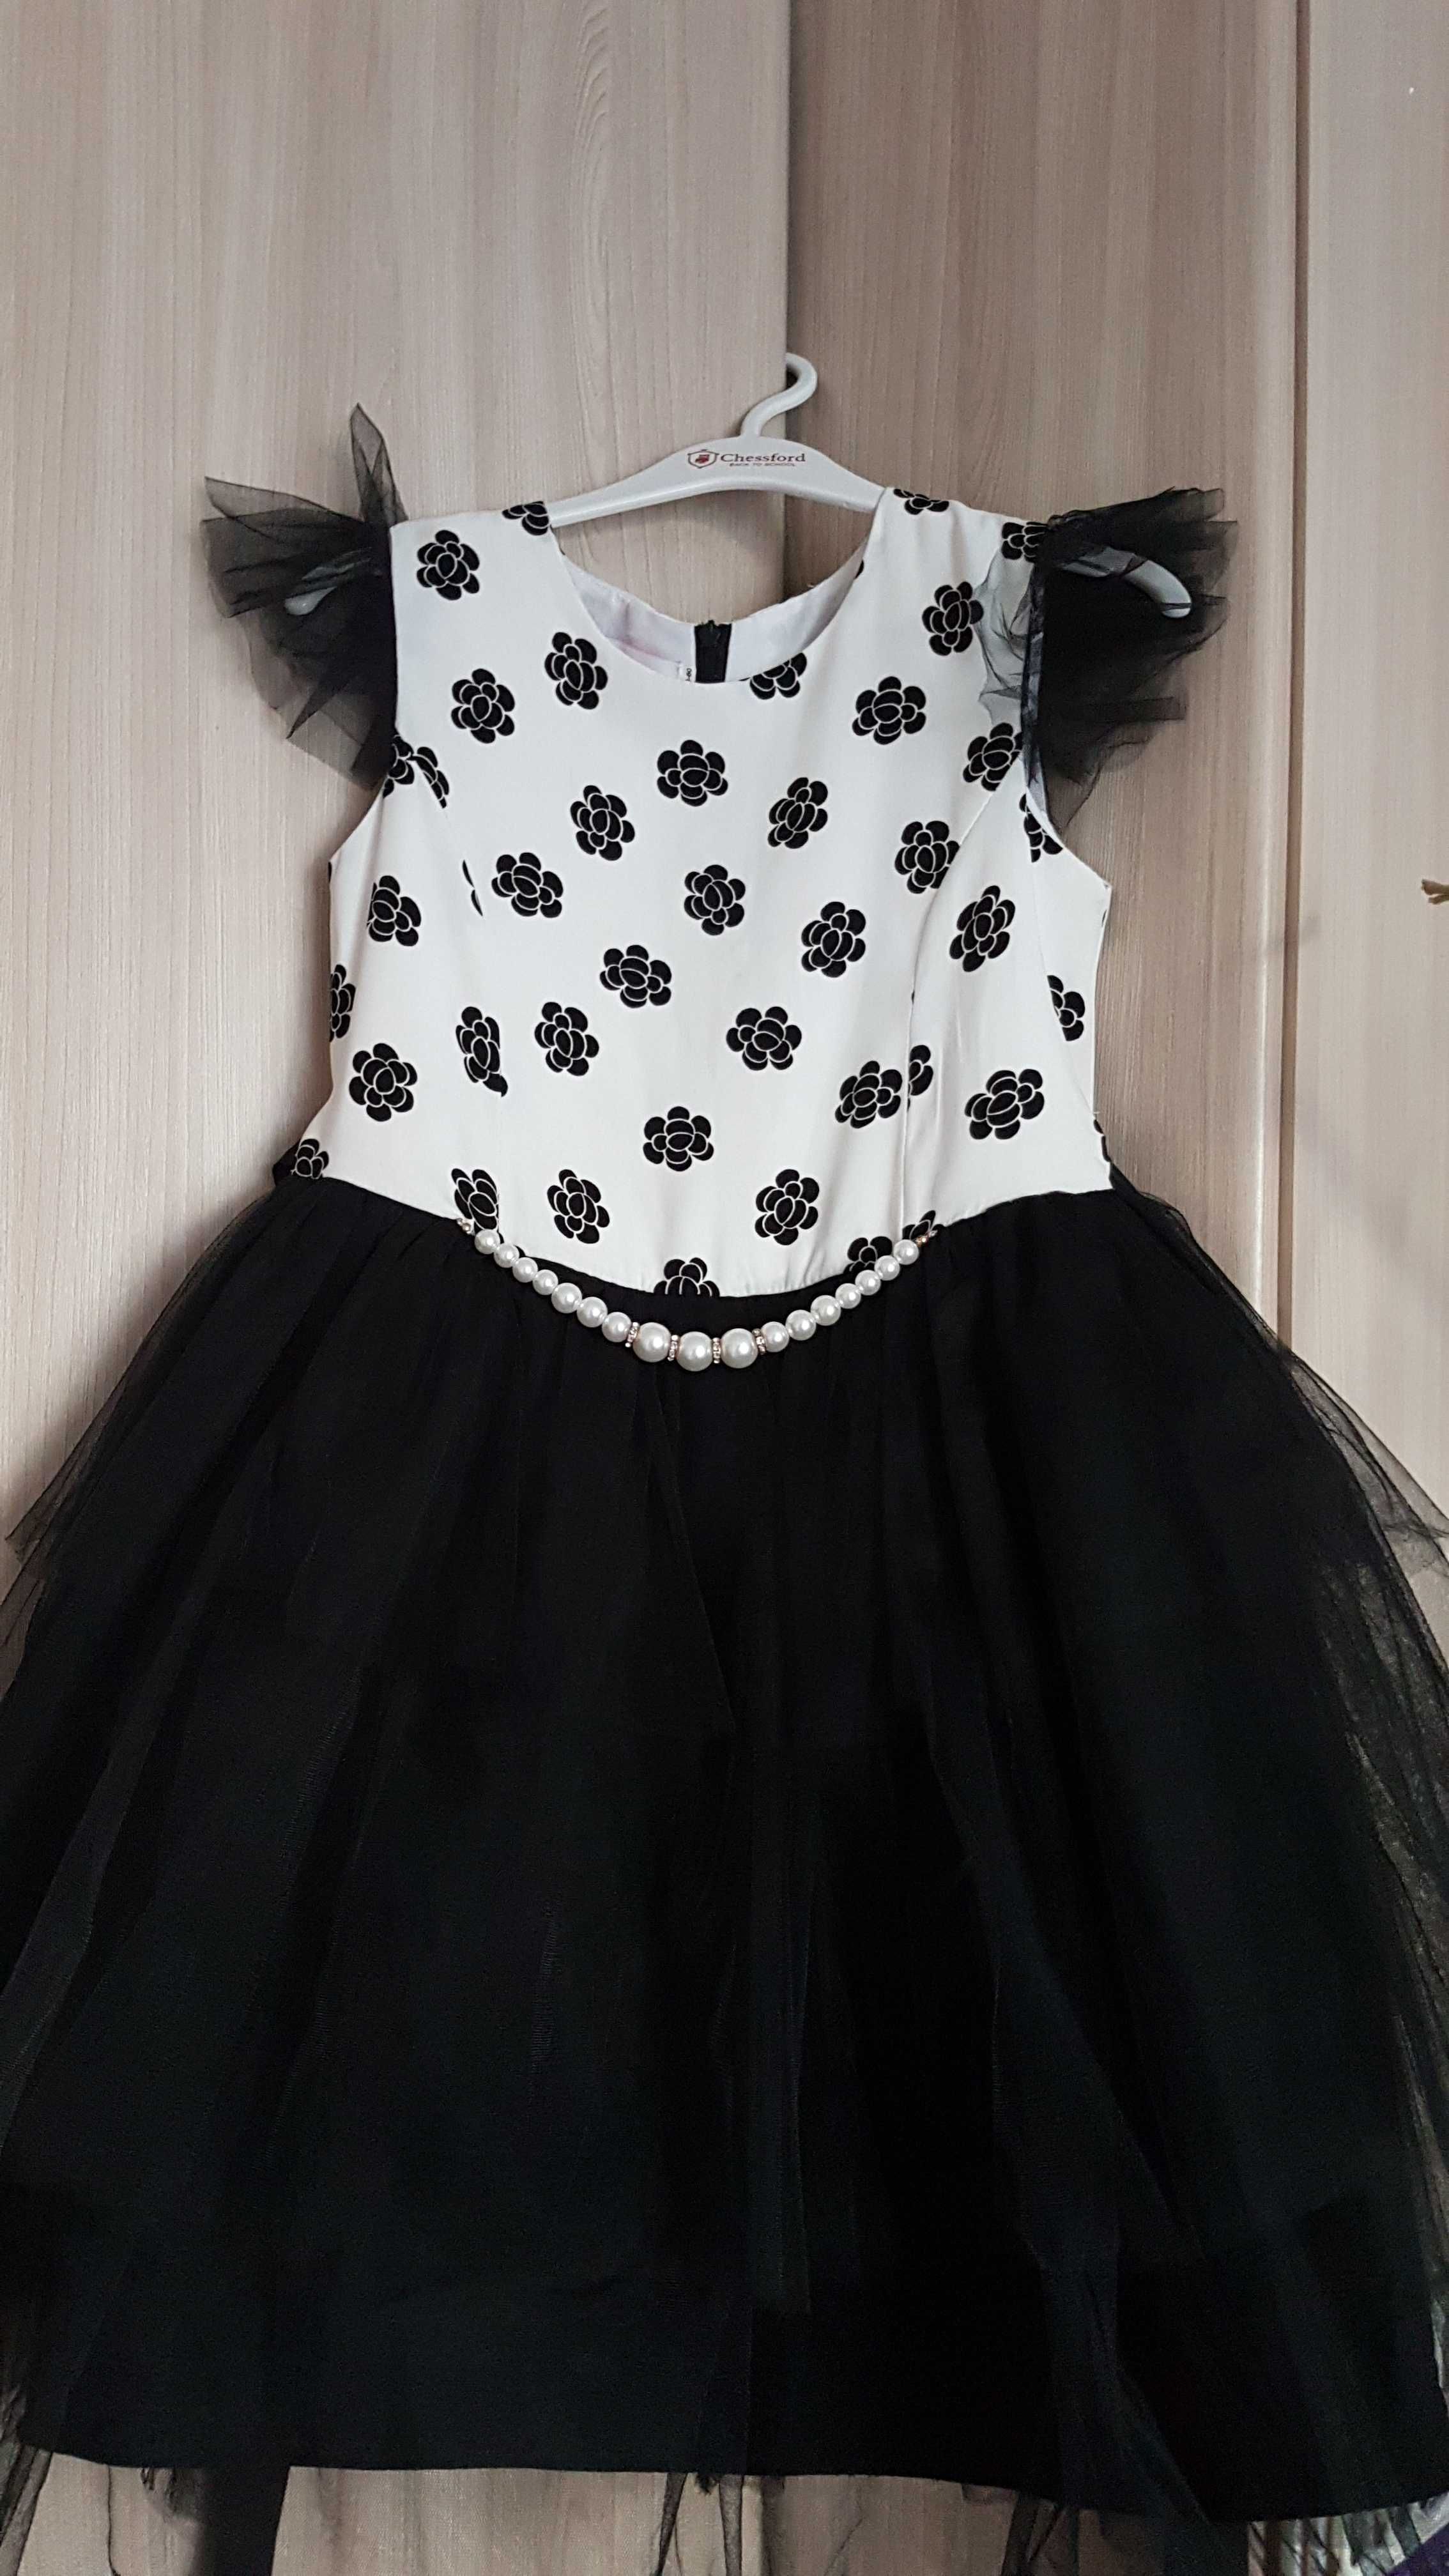 Платье нарядное, трикотажное, на девочку 9-10 лет, рост 140